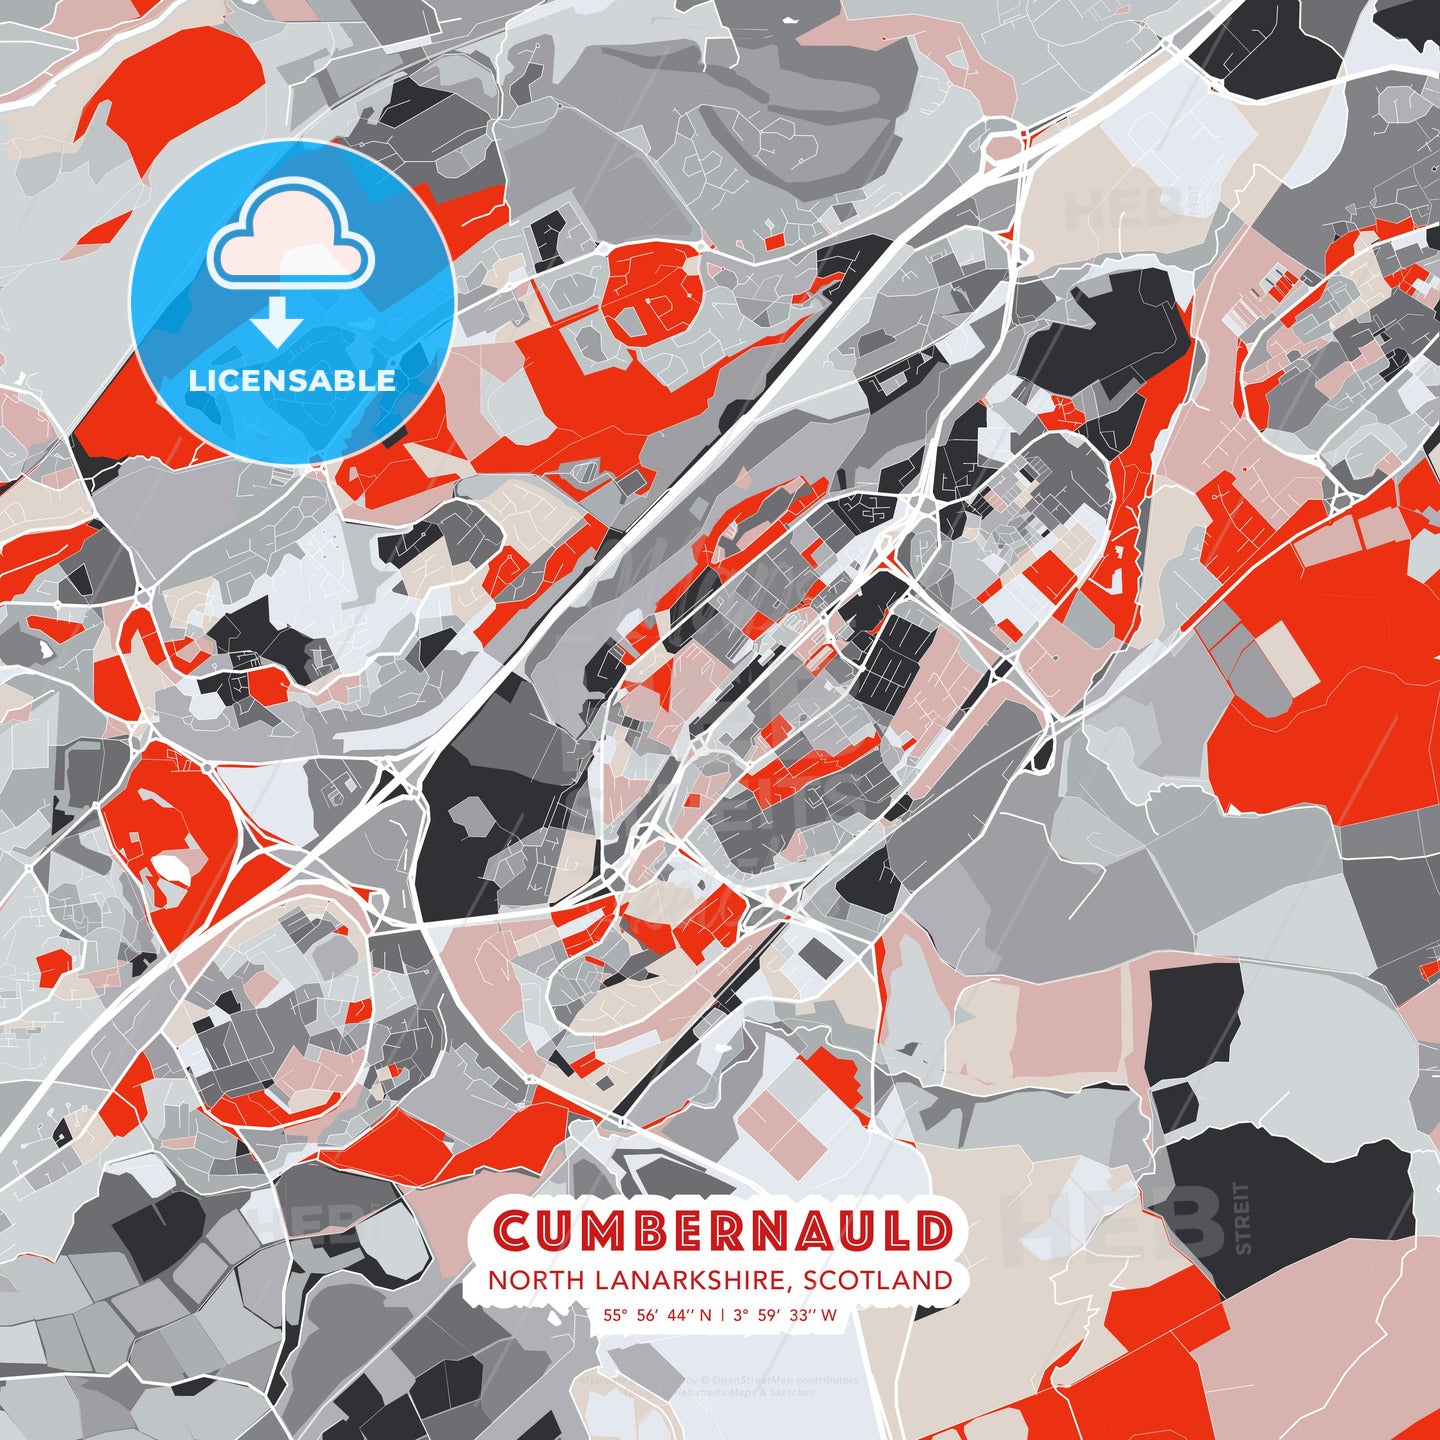 Cumbernauld, North Lanarkshire, Scotland, modern map - HEBSTREITS Sketches